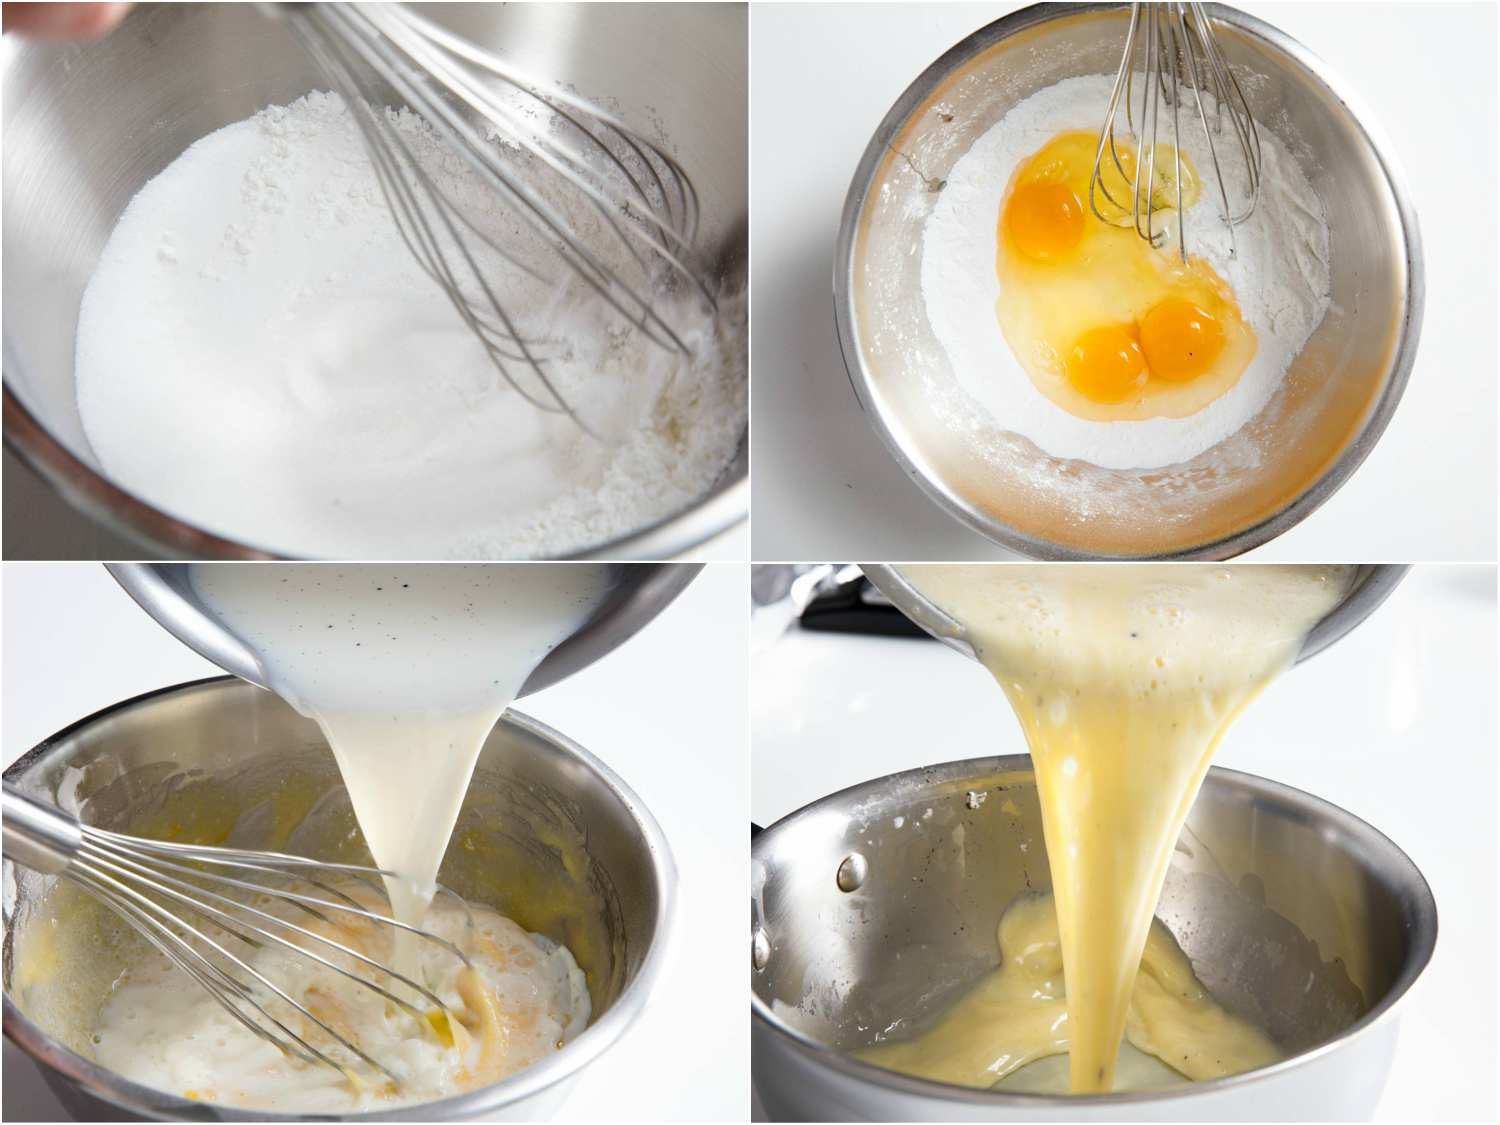 拼贴的季节香草奶油:糖和玉米淀粉搅拌,加入鸡蛋,其次是浸泡牛奶,和把混合物倒进一个好。gydF4y2Ba